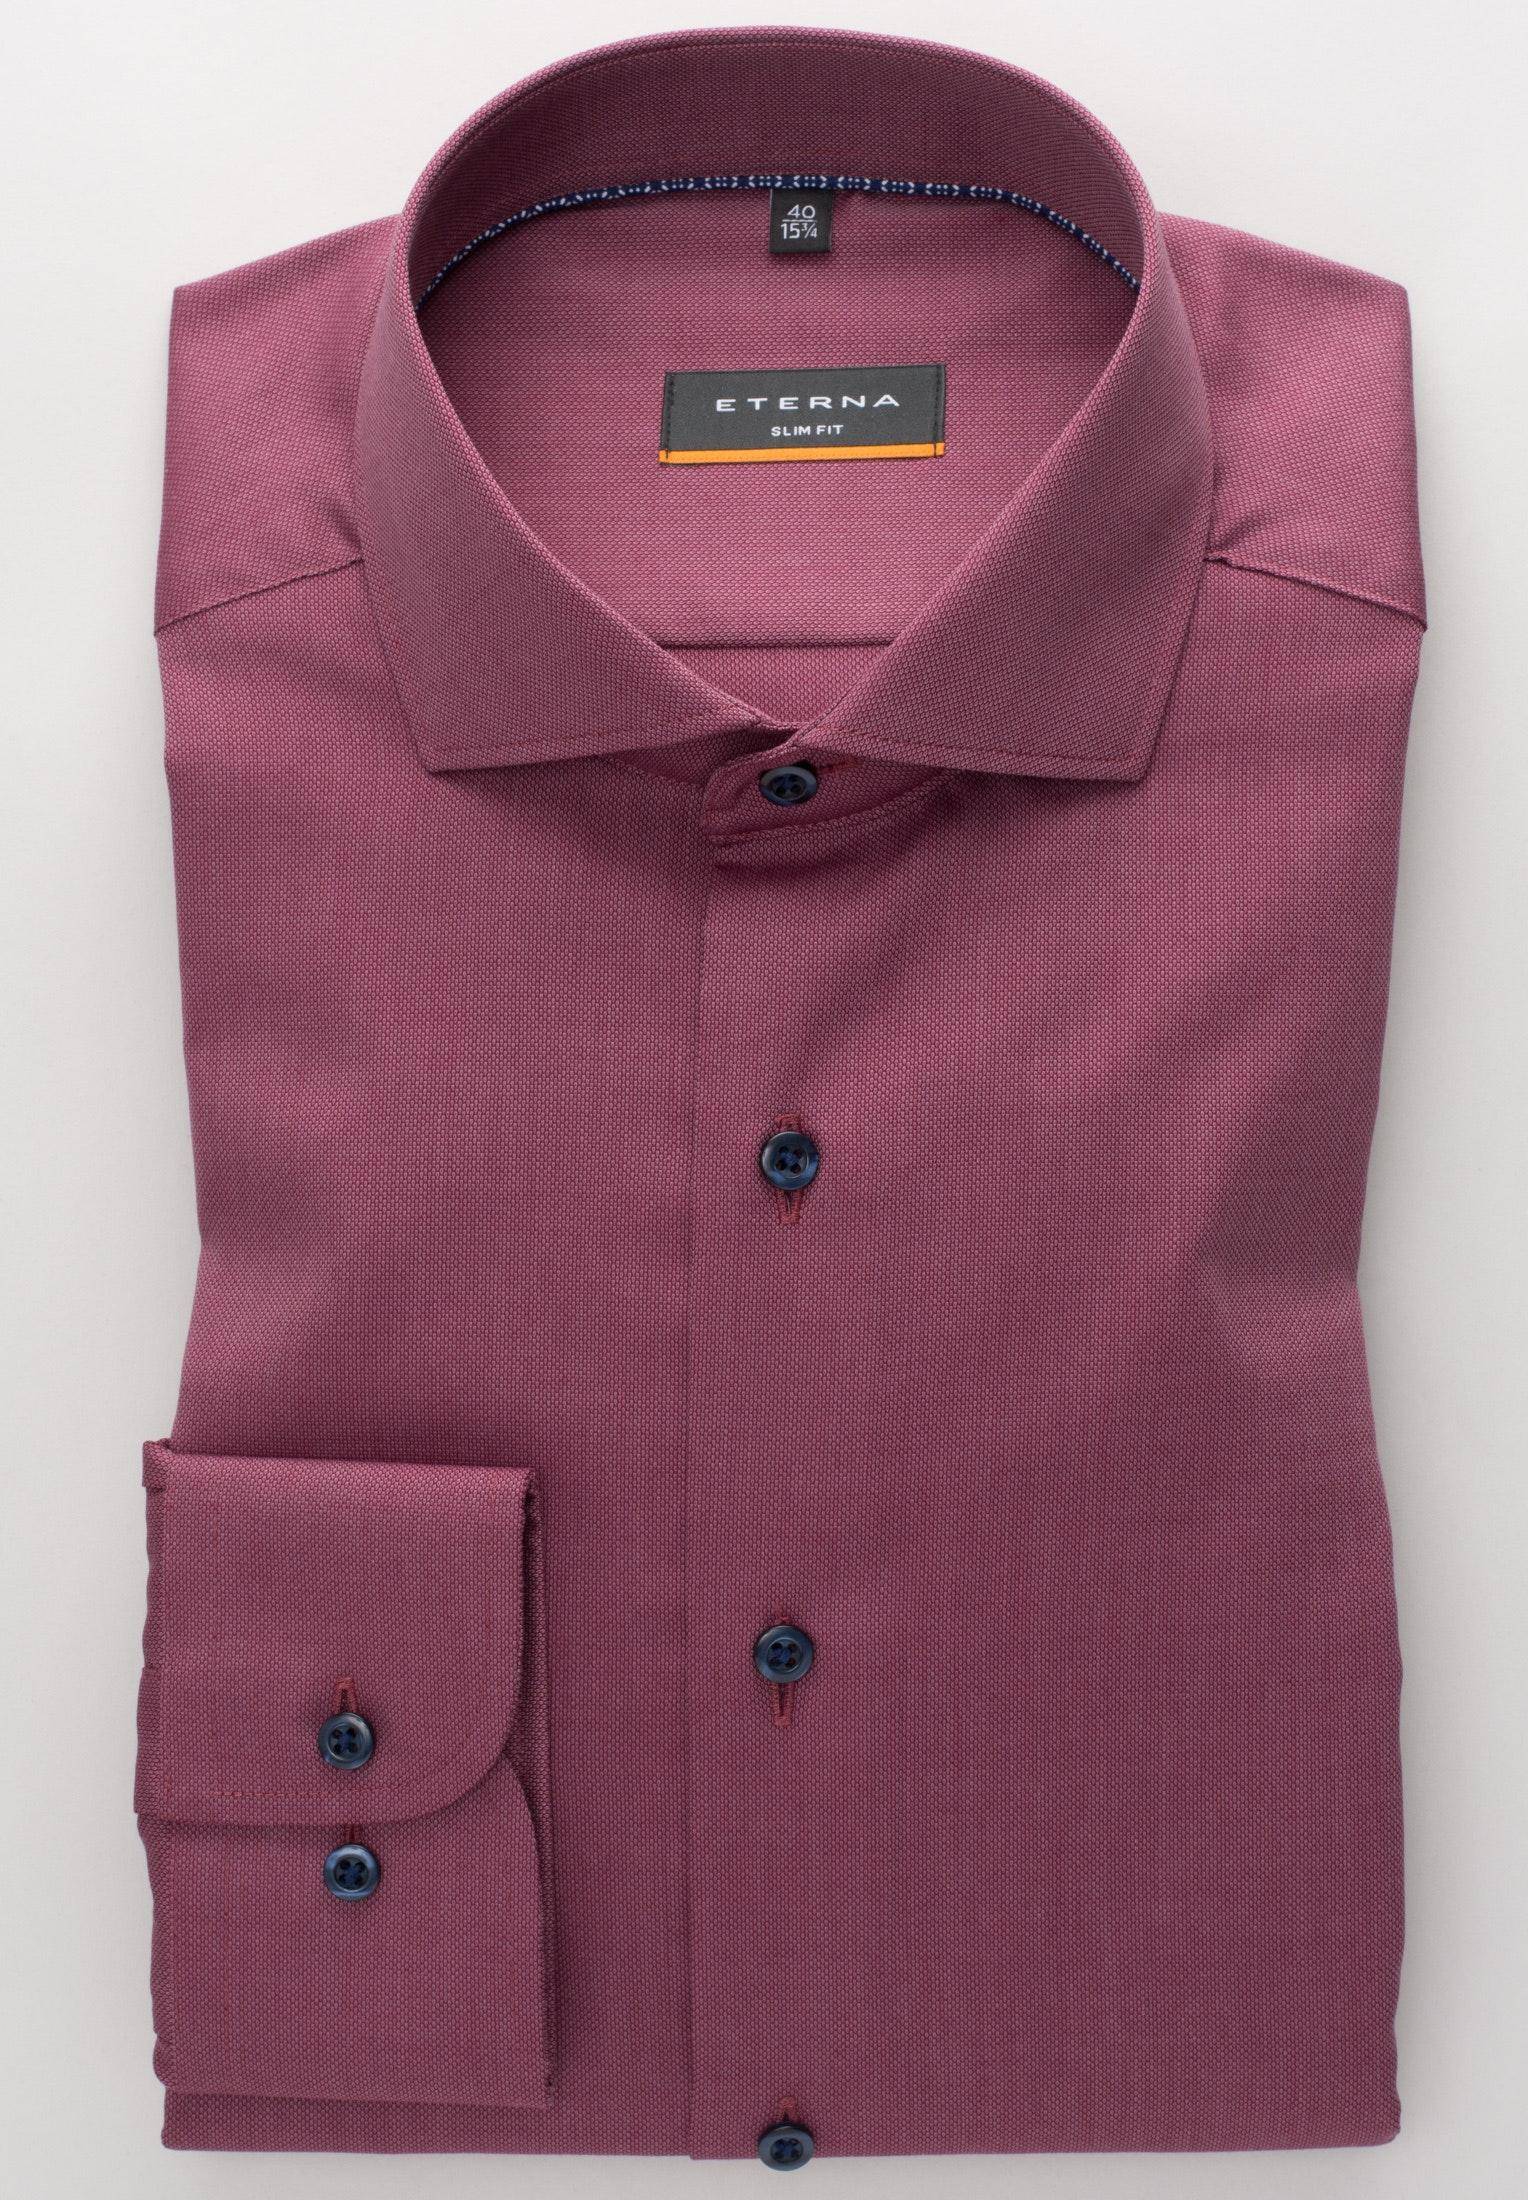 Мужская рубашка ETERNA, бордовая, цвет бордовый, размер 46 - фото 2